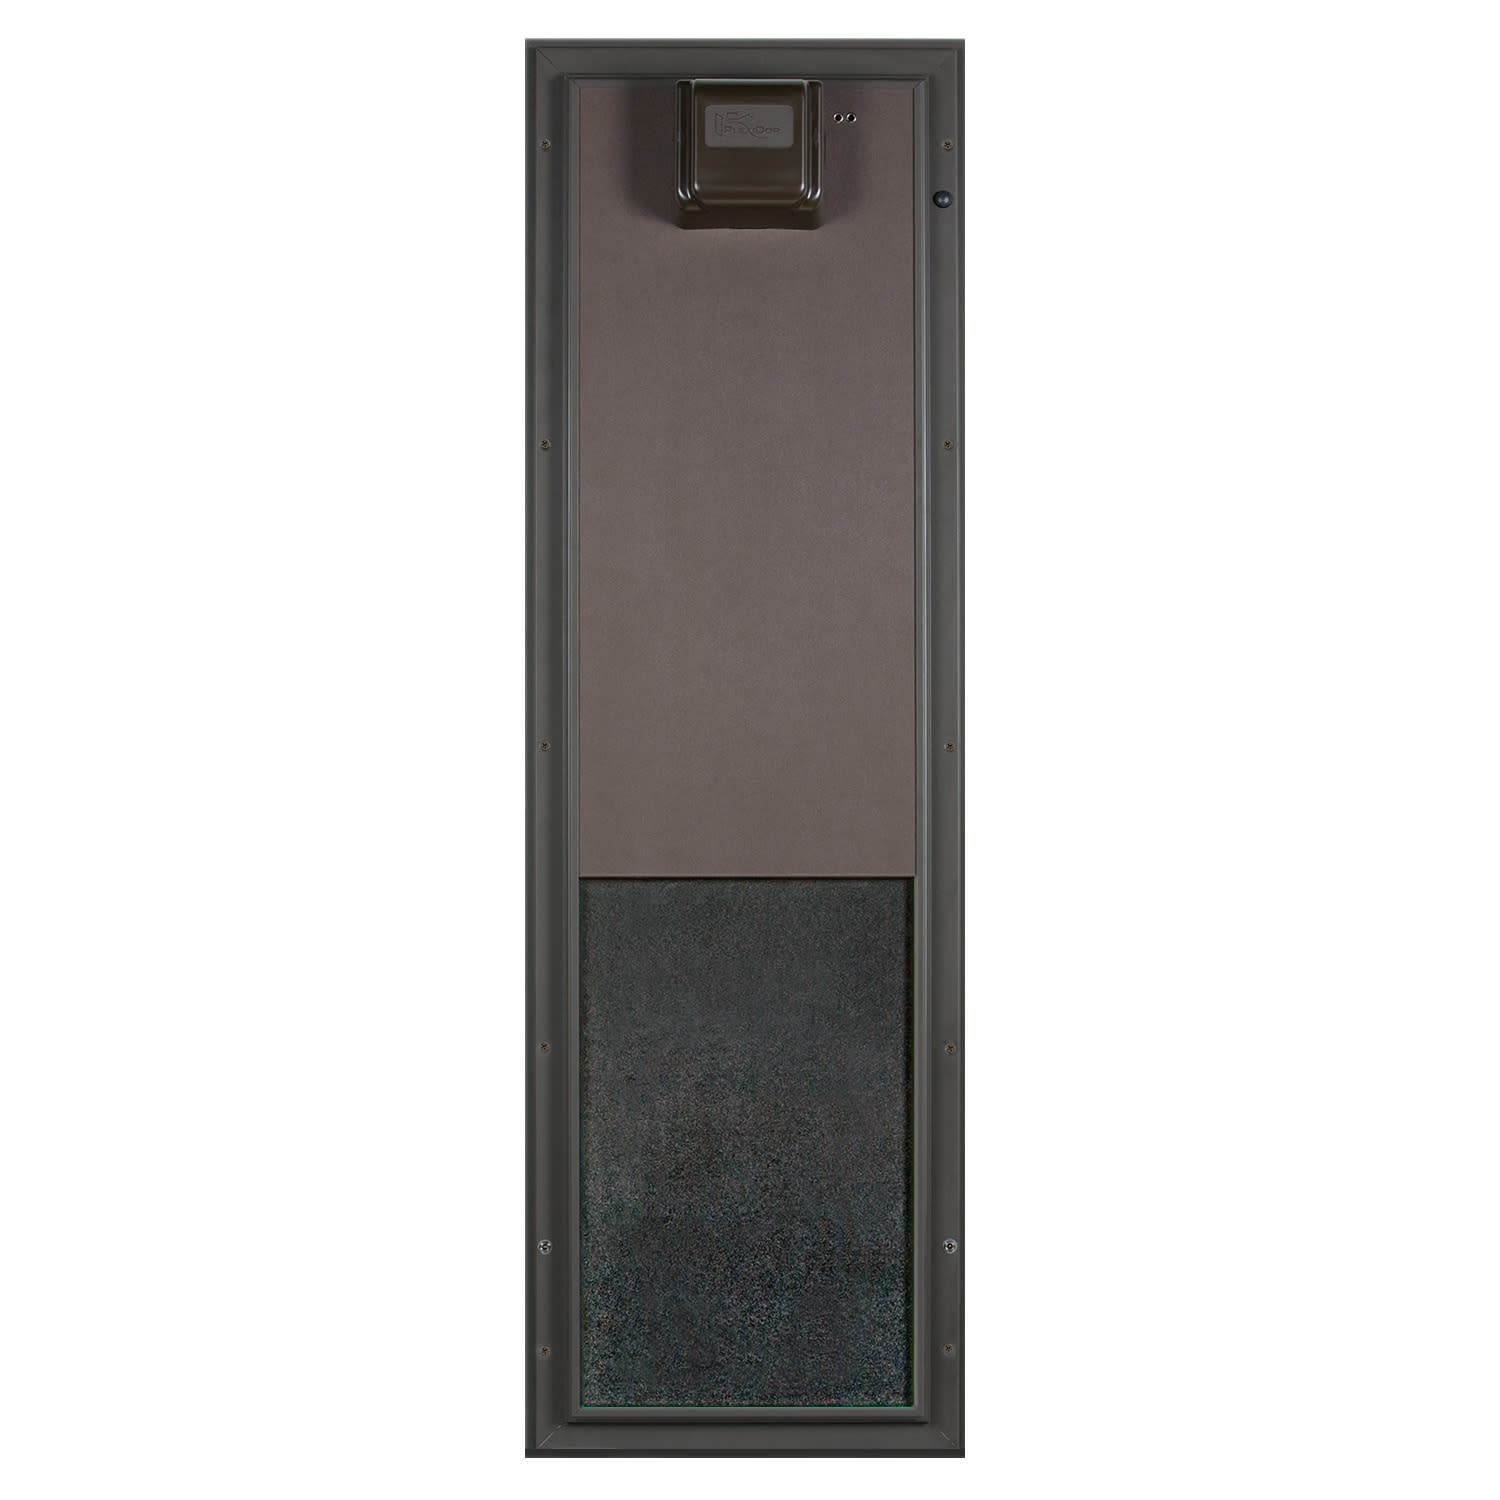 Plexidor Large Door Mount PDE Electronic Pet Door in Bronze